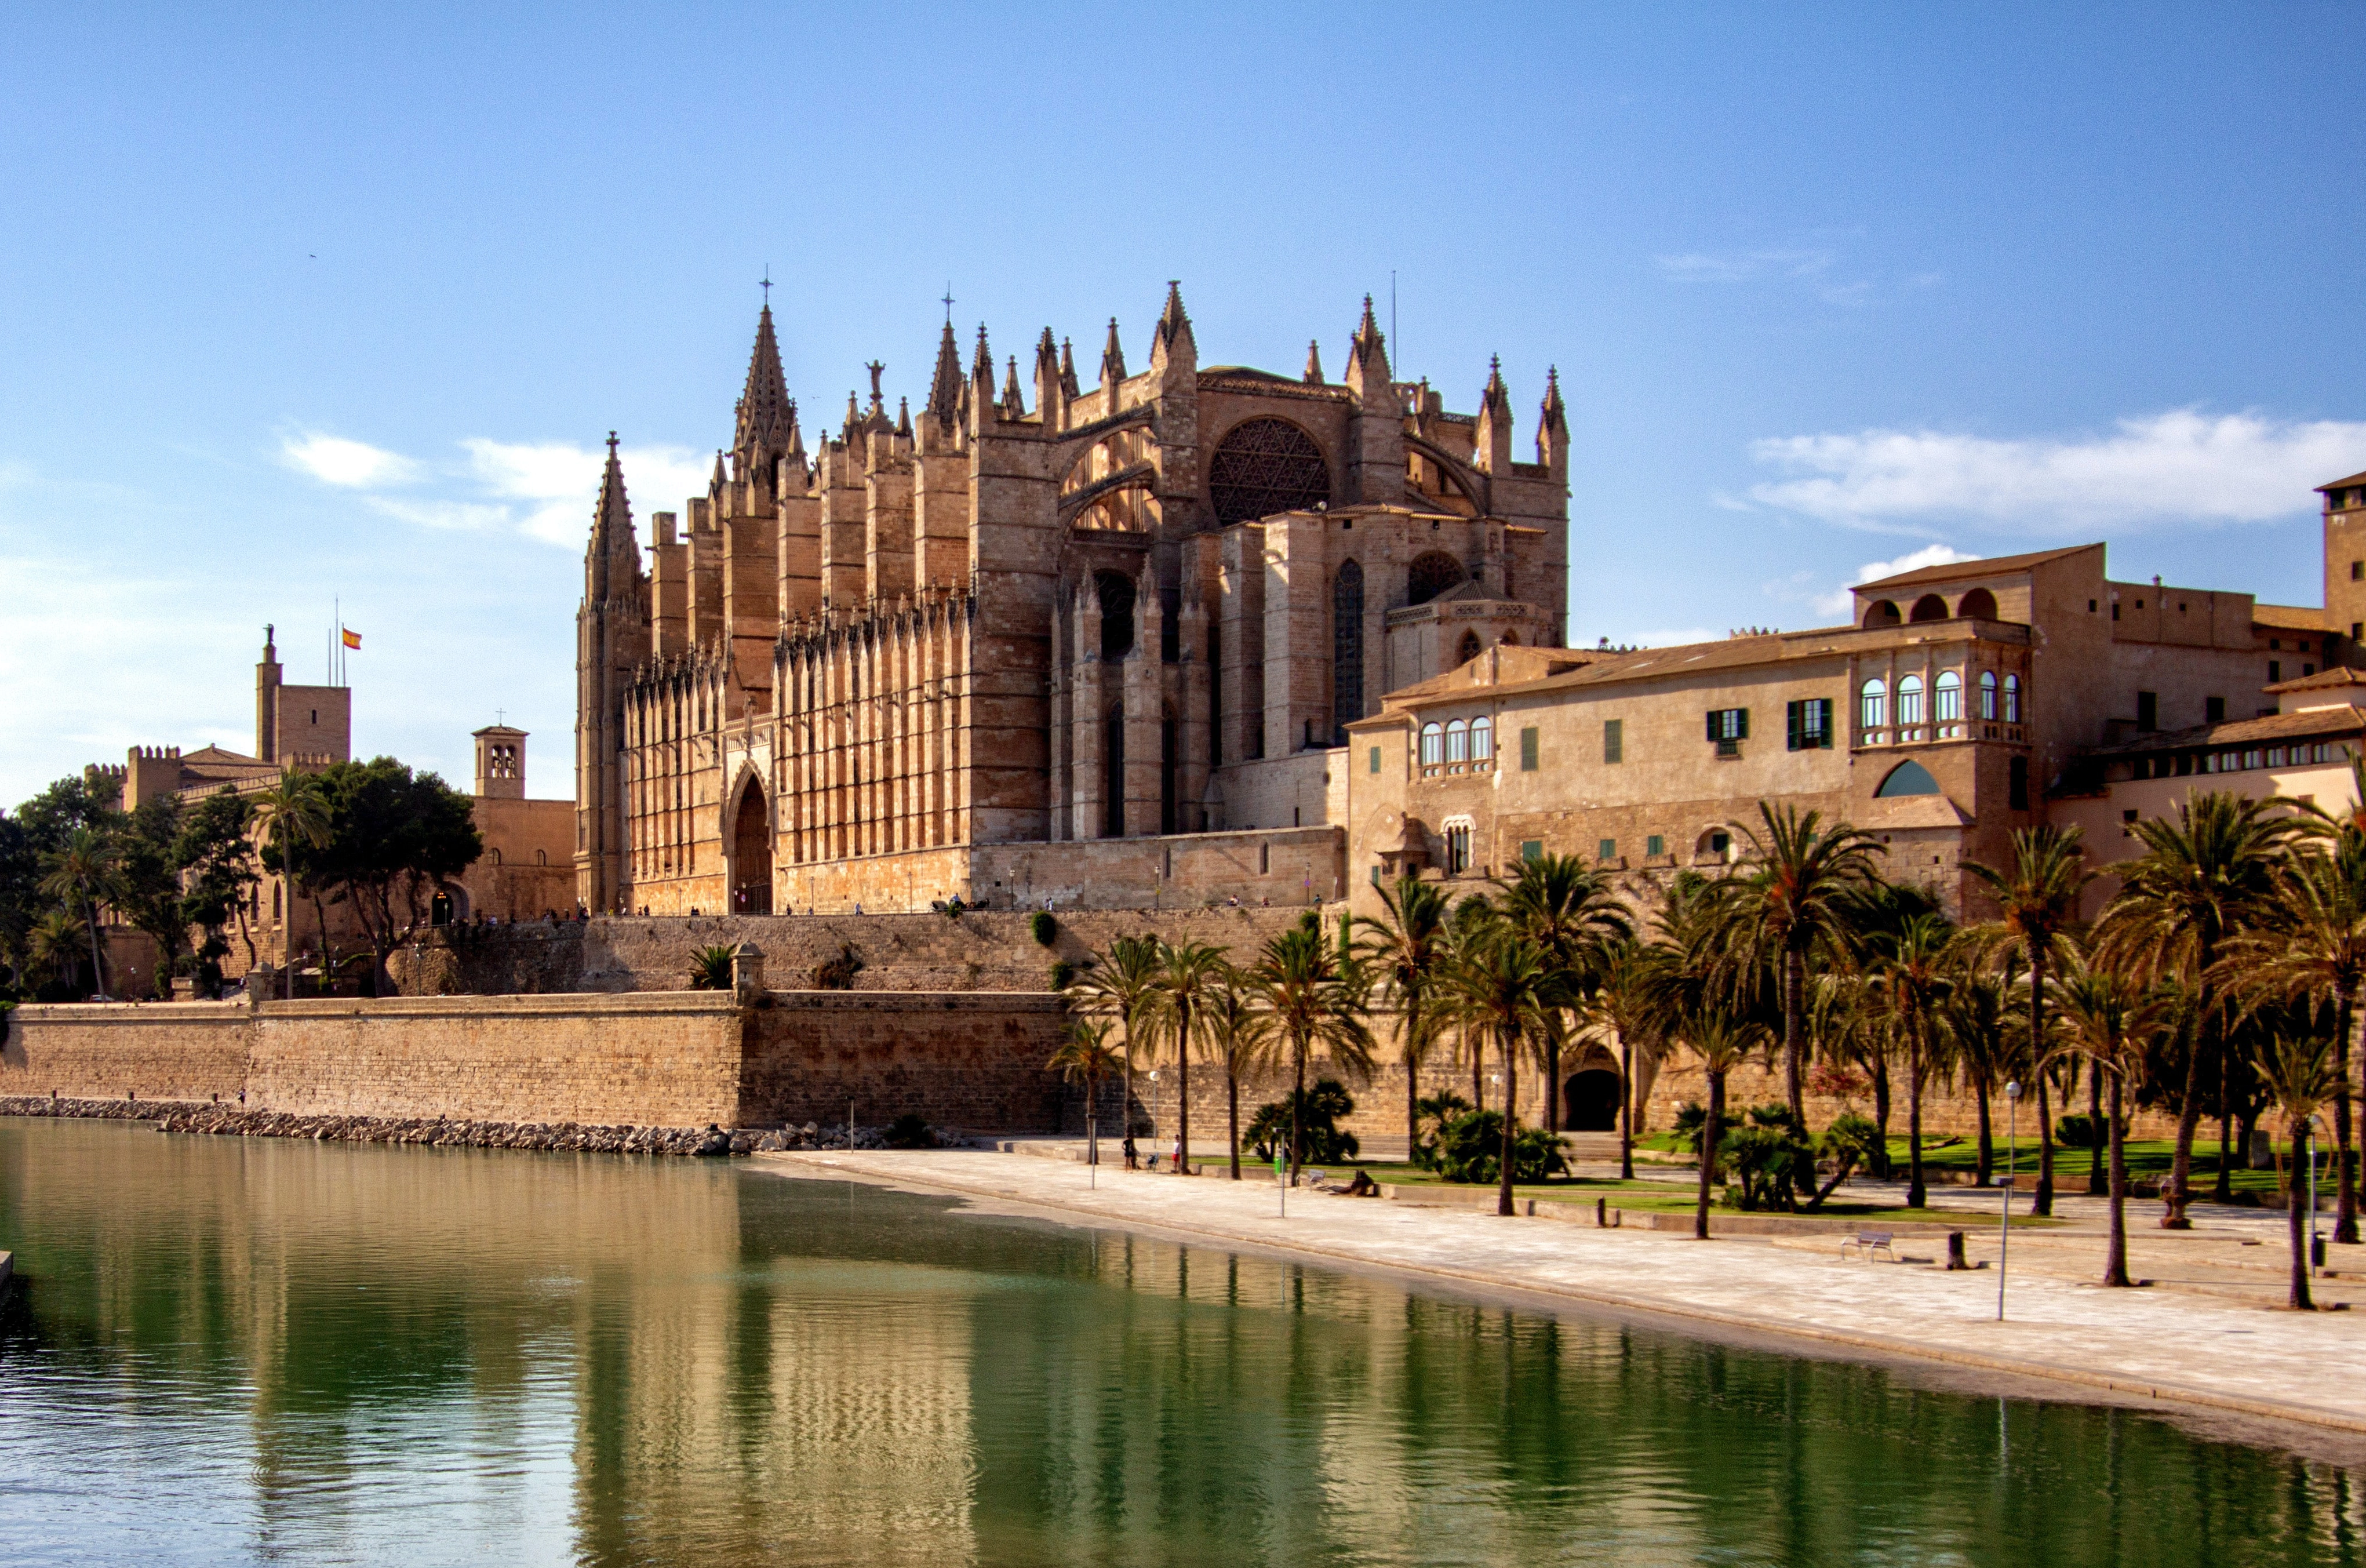 Mallorca kent enorm veel geweldige culture bezienswaardigheden. Onze favoriet is kathedraal La Seu die je kunt vinden in Palma de Mallorca.